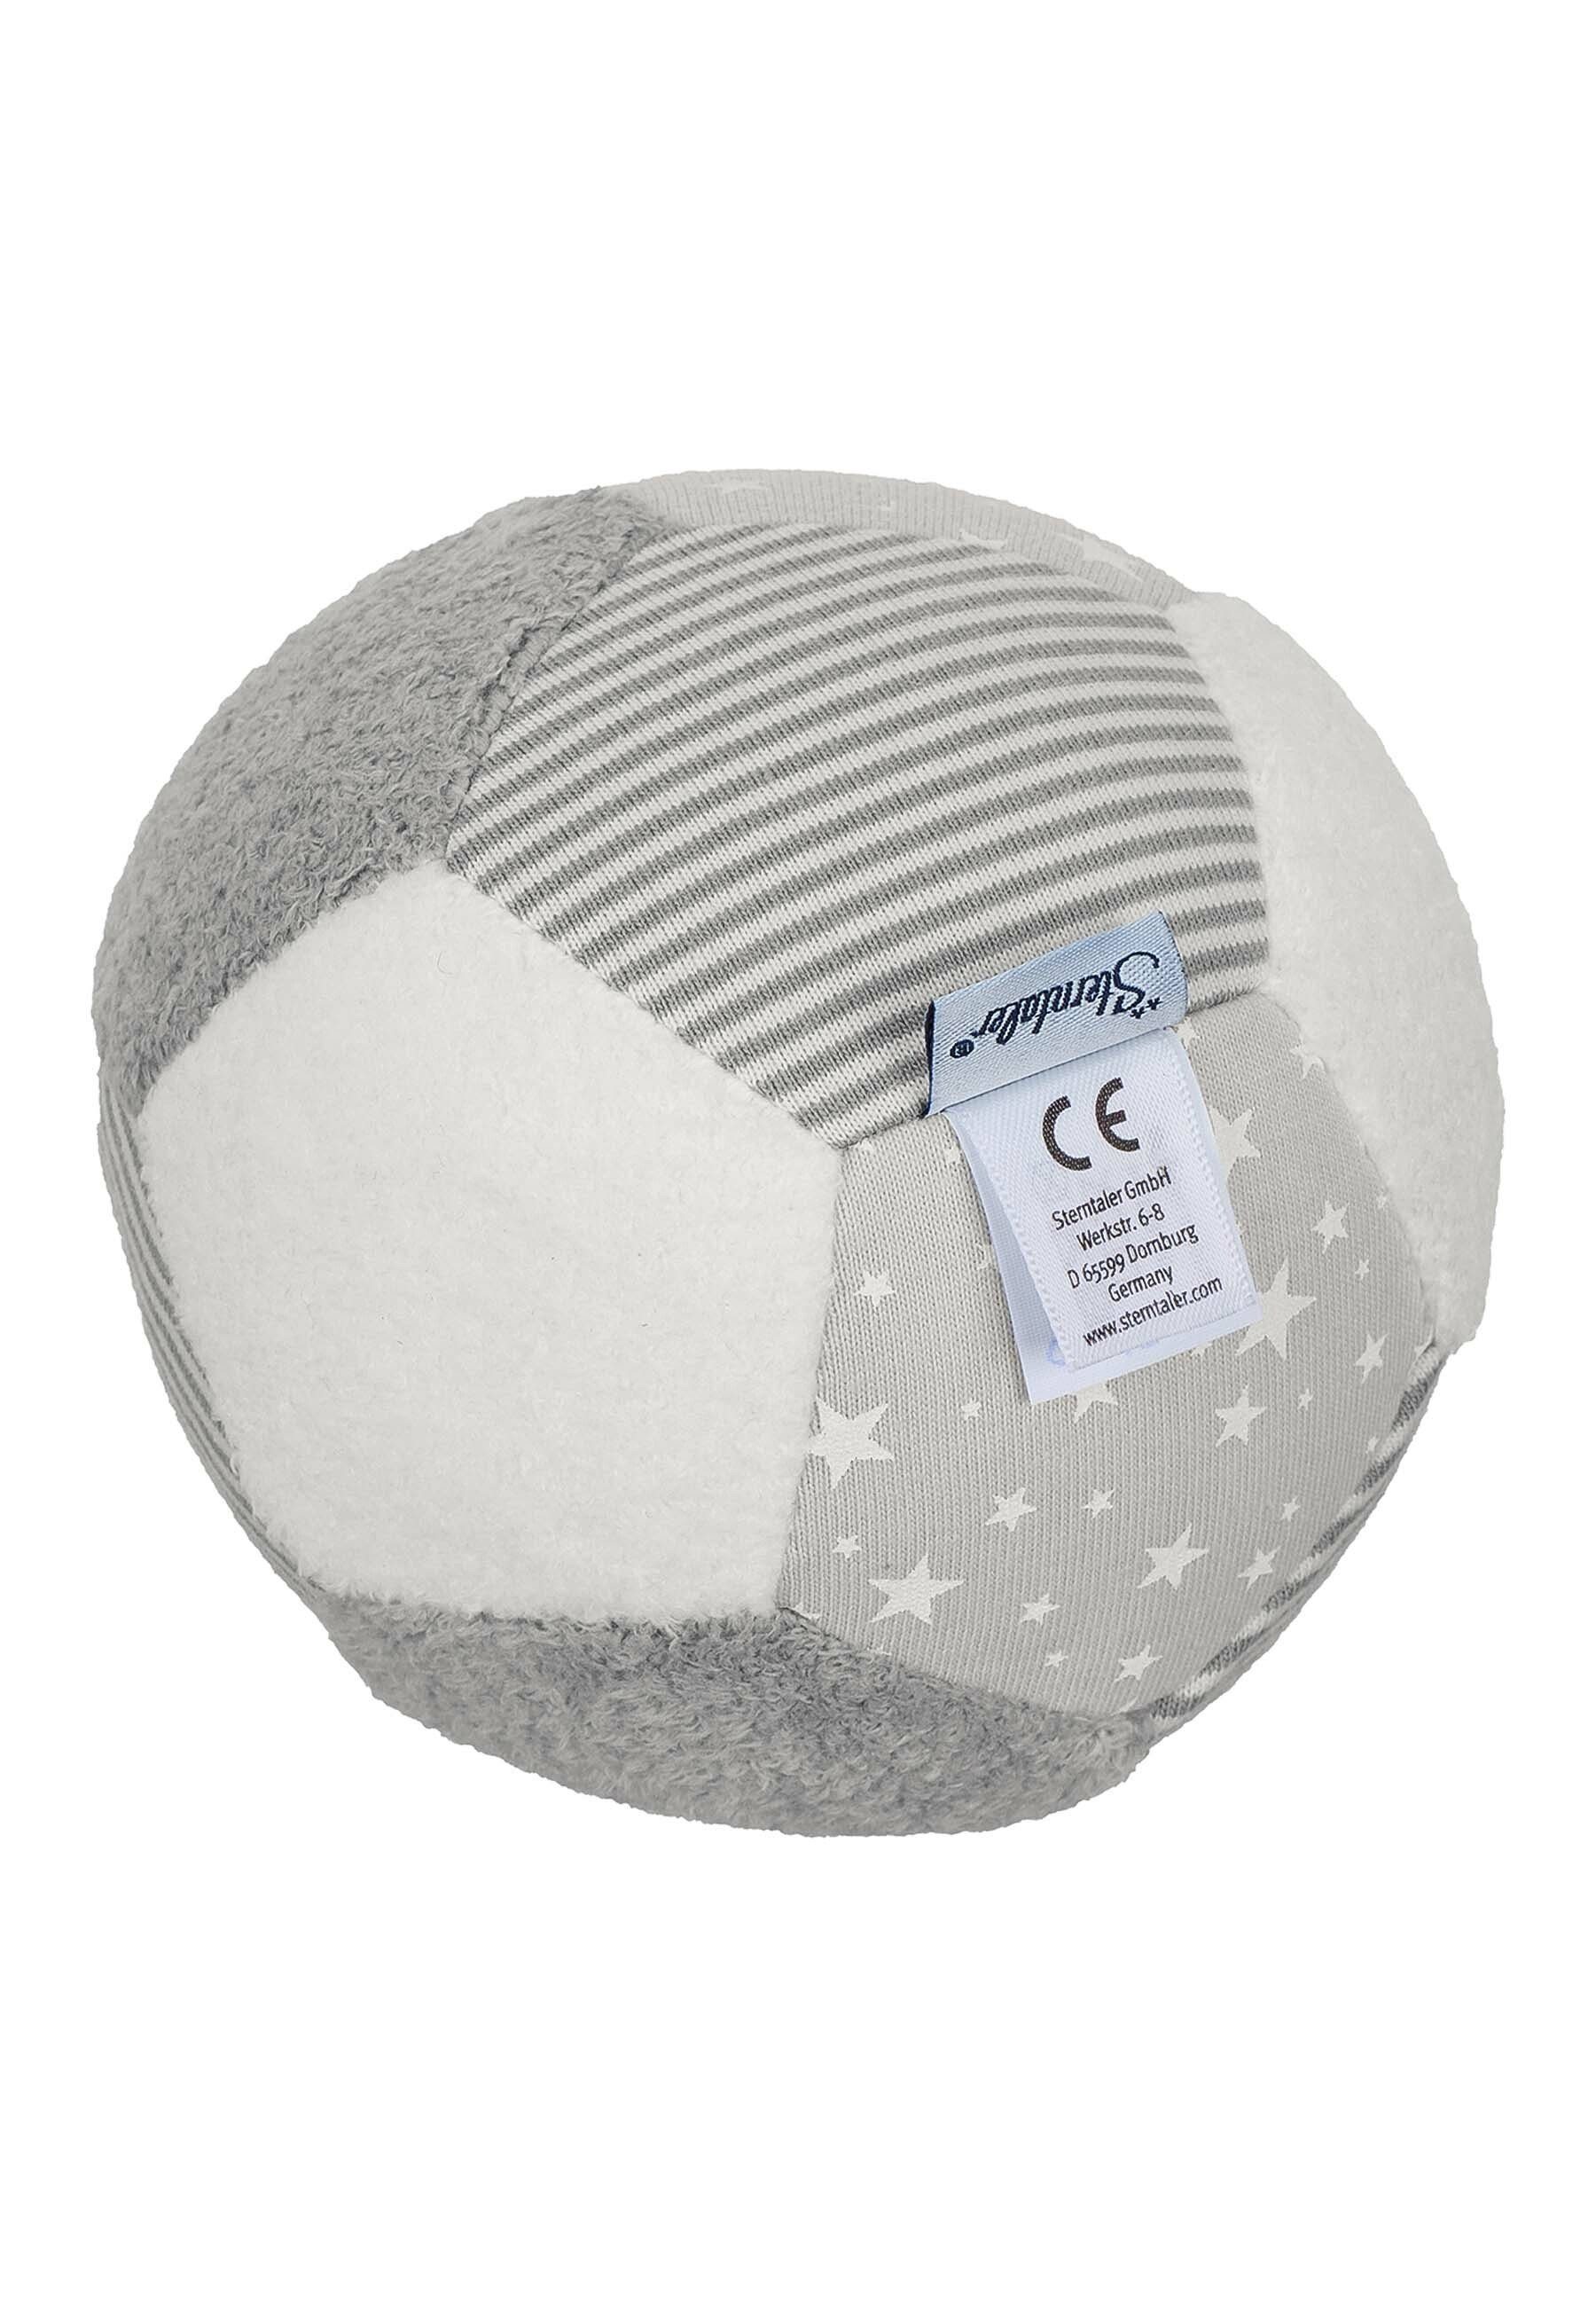 - und grau/weiß, Baumwolle aus hören, 11 Polyester Grau/weiß Sterntaler® in Spielball Stoff groß Ball Babyball Spielball - cm aus - - fühlen, mit krabbeln im Materialmix Bälle Rassel Ball Baby rollen,